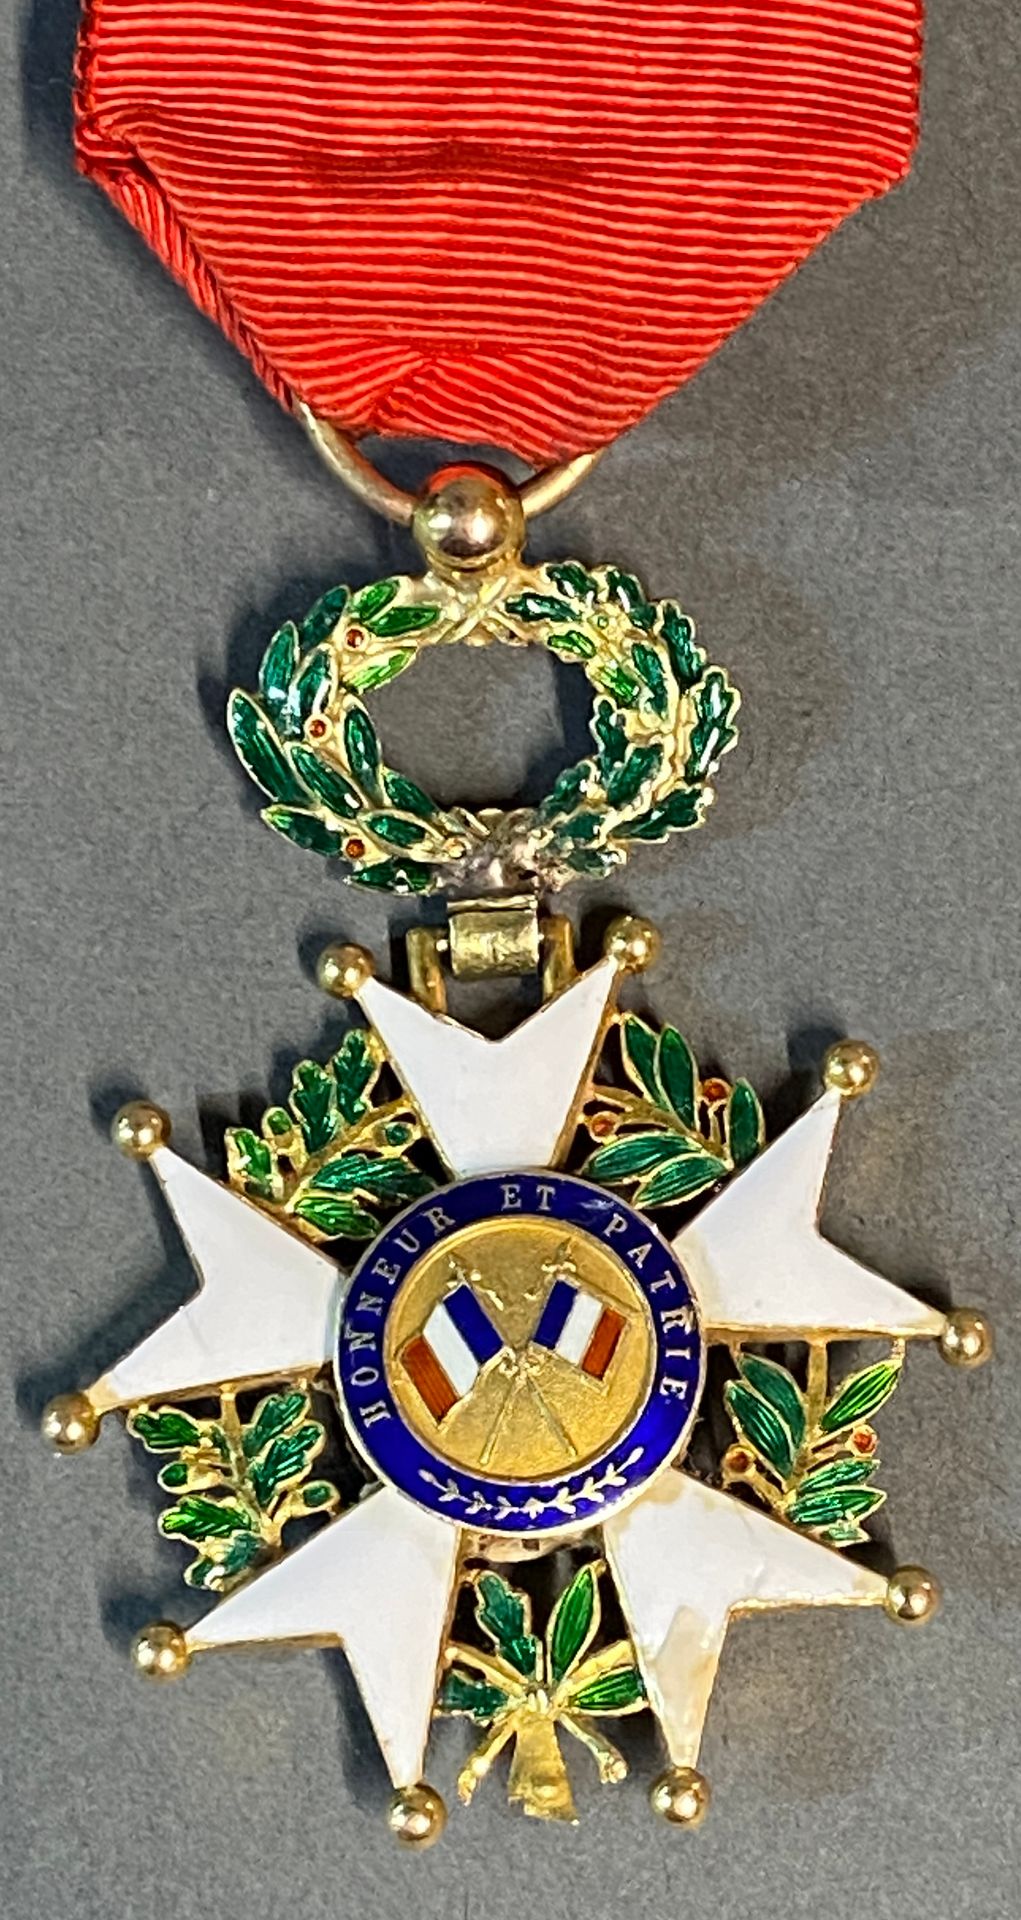 Null Legione d'onore istituita nel 1802

Due croci della Legione d'Onore in oro &hellip;